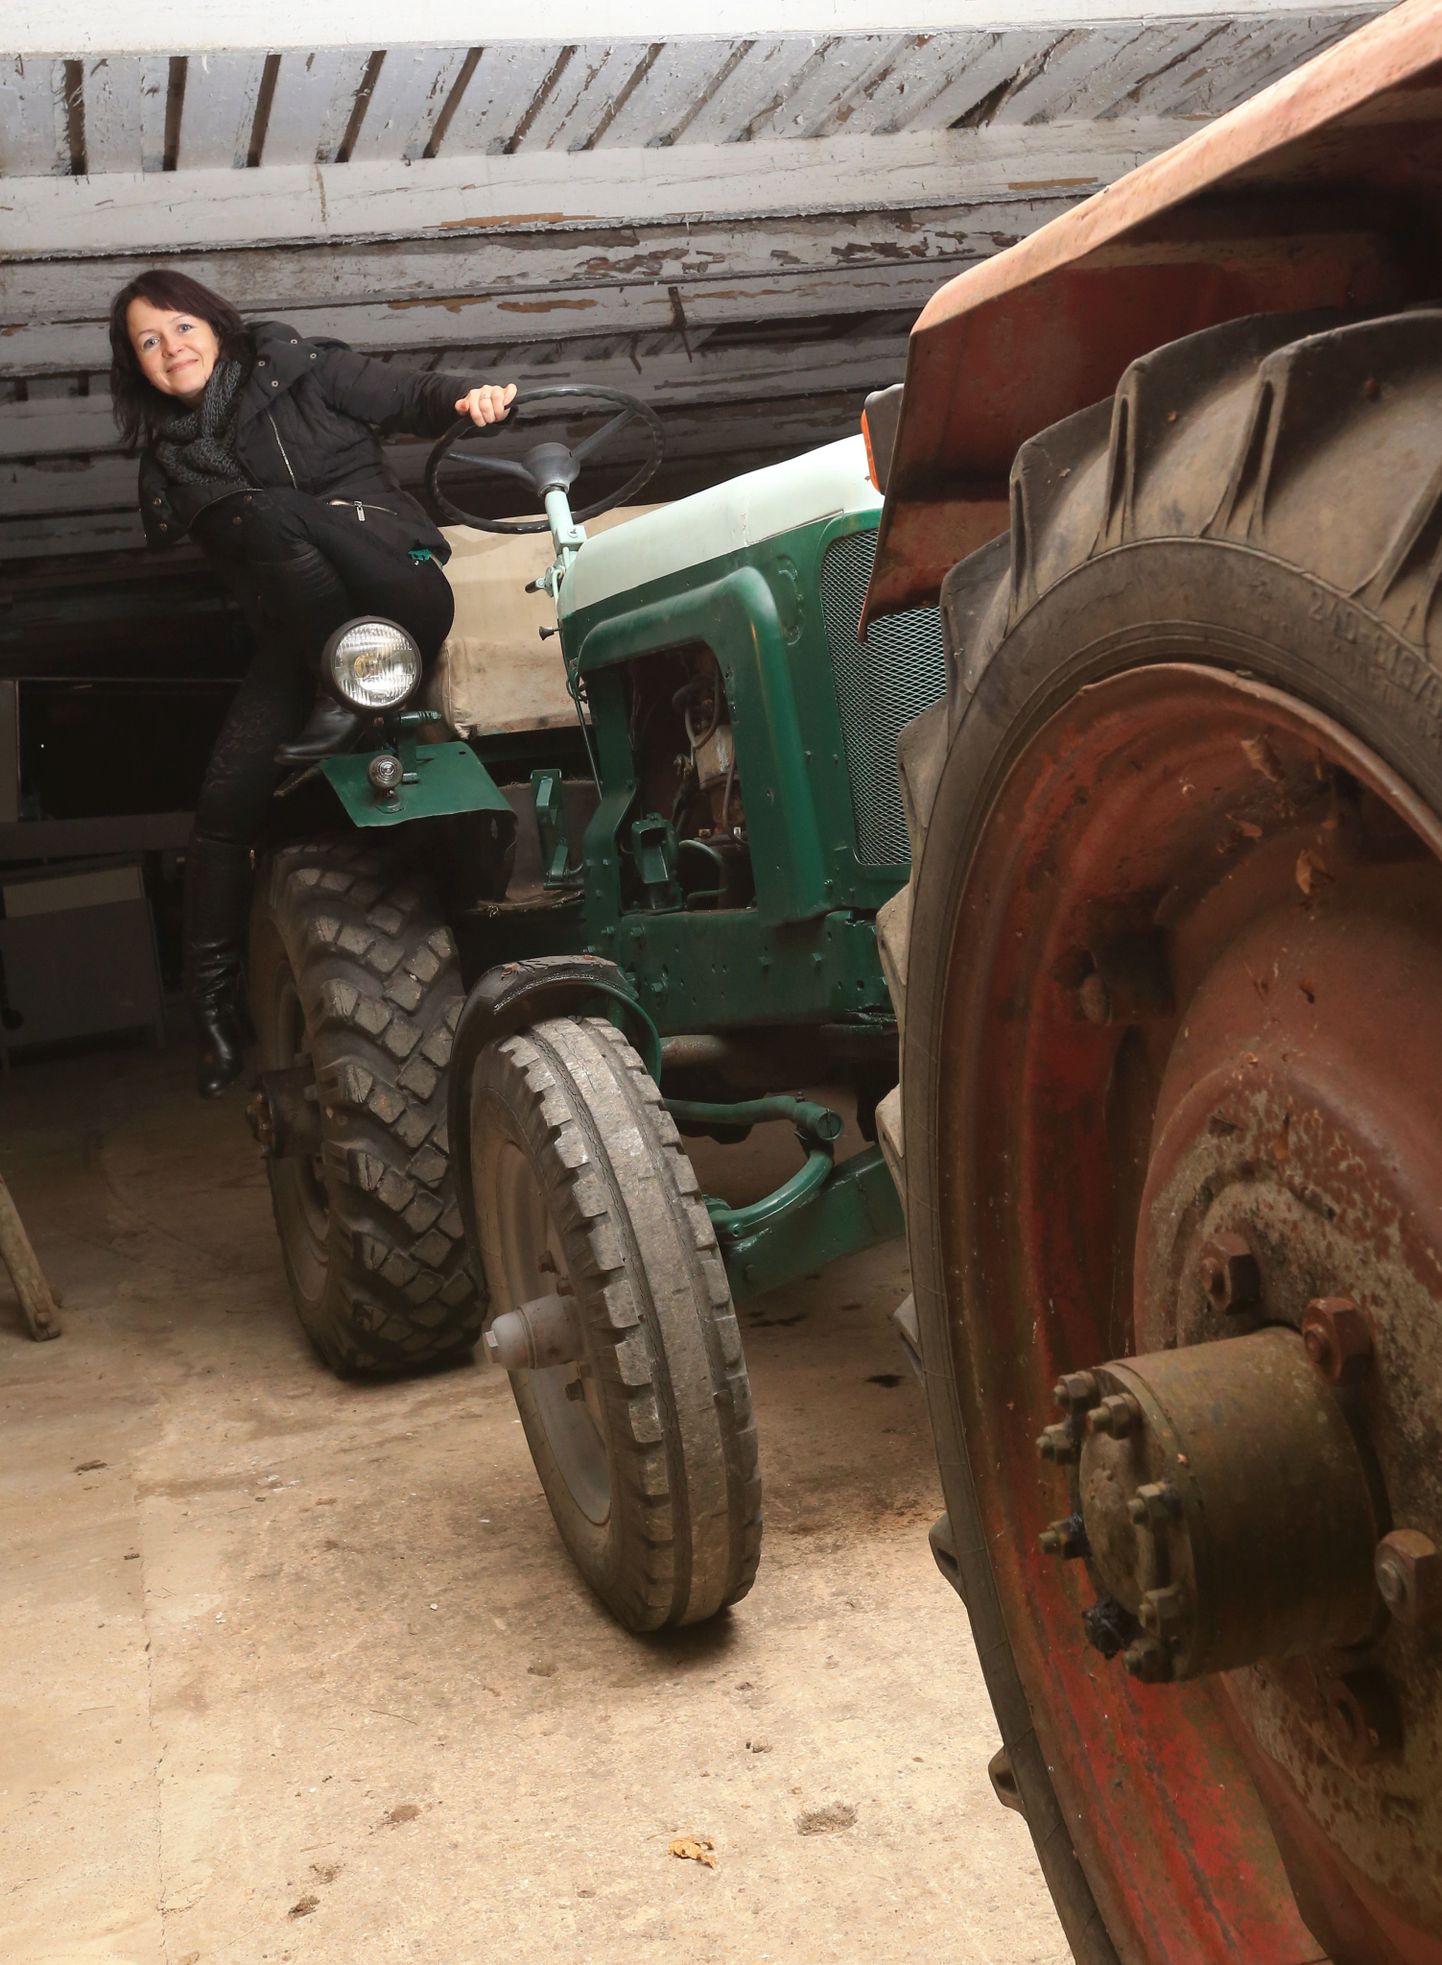 Eesti põllumajandusmuuseumi peavarahoidja Kaire Ilula proovis järele, kui mugav on töötada muuseumis hoiul oleva traktoriga Jumbu, mille ehitas Põltsamaa mees Karl-Allan Päll 1970. aastal.